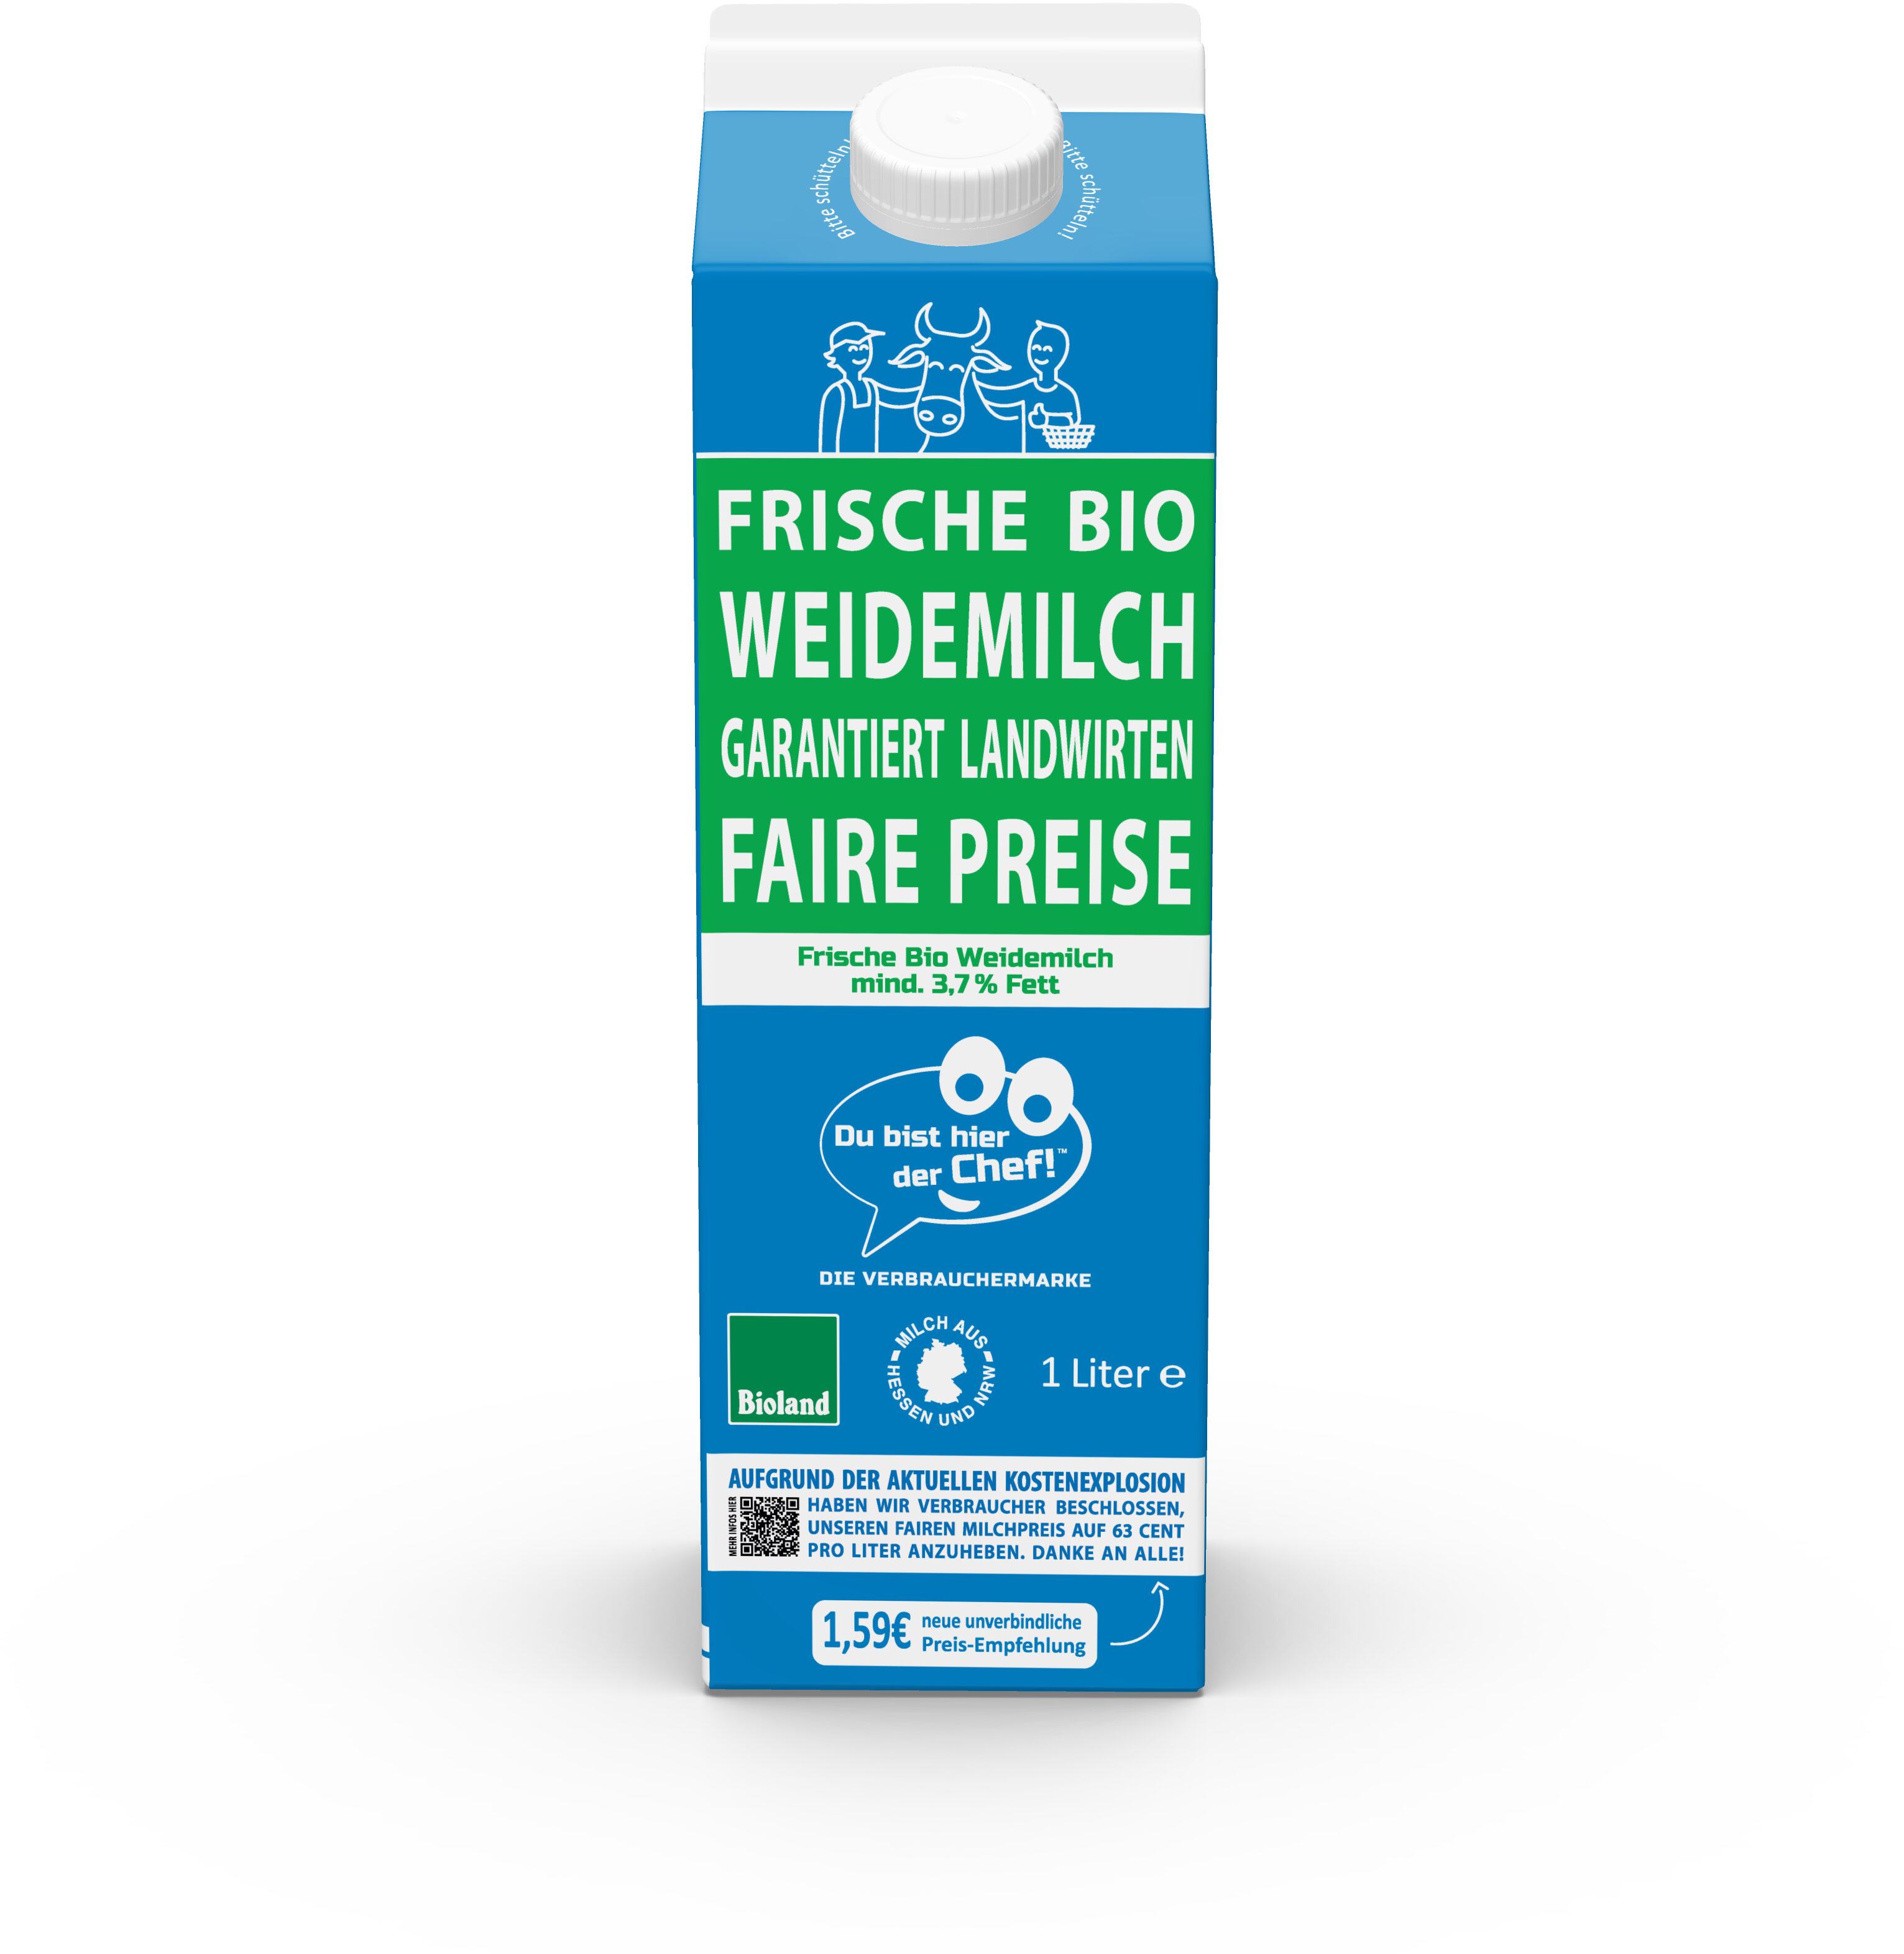 Frische Bio Weidemilch - Produkt